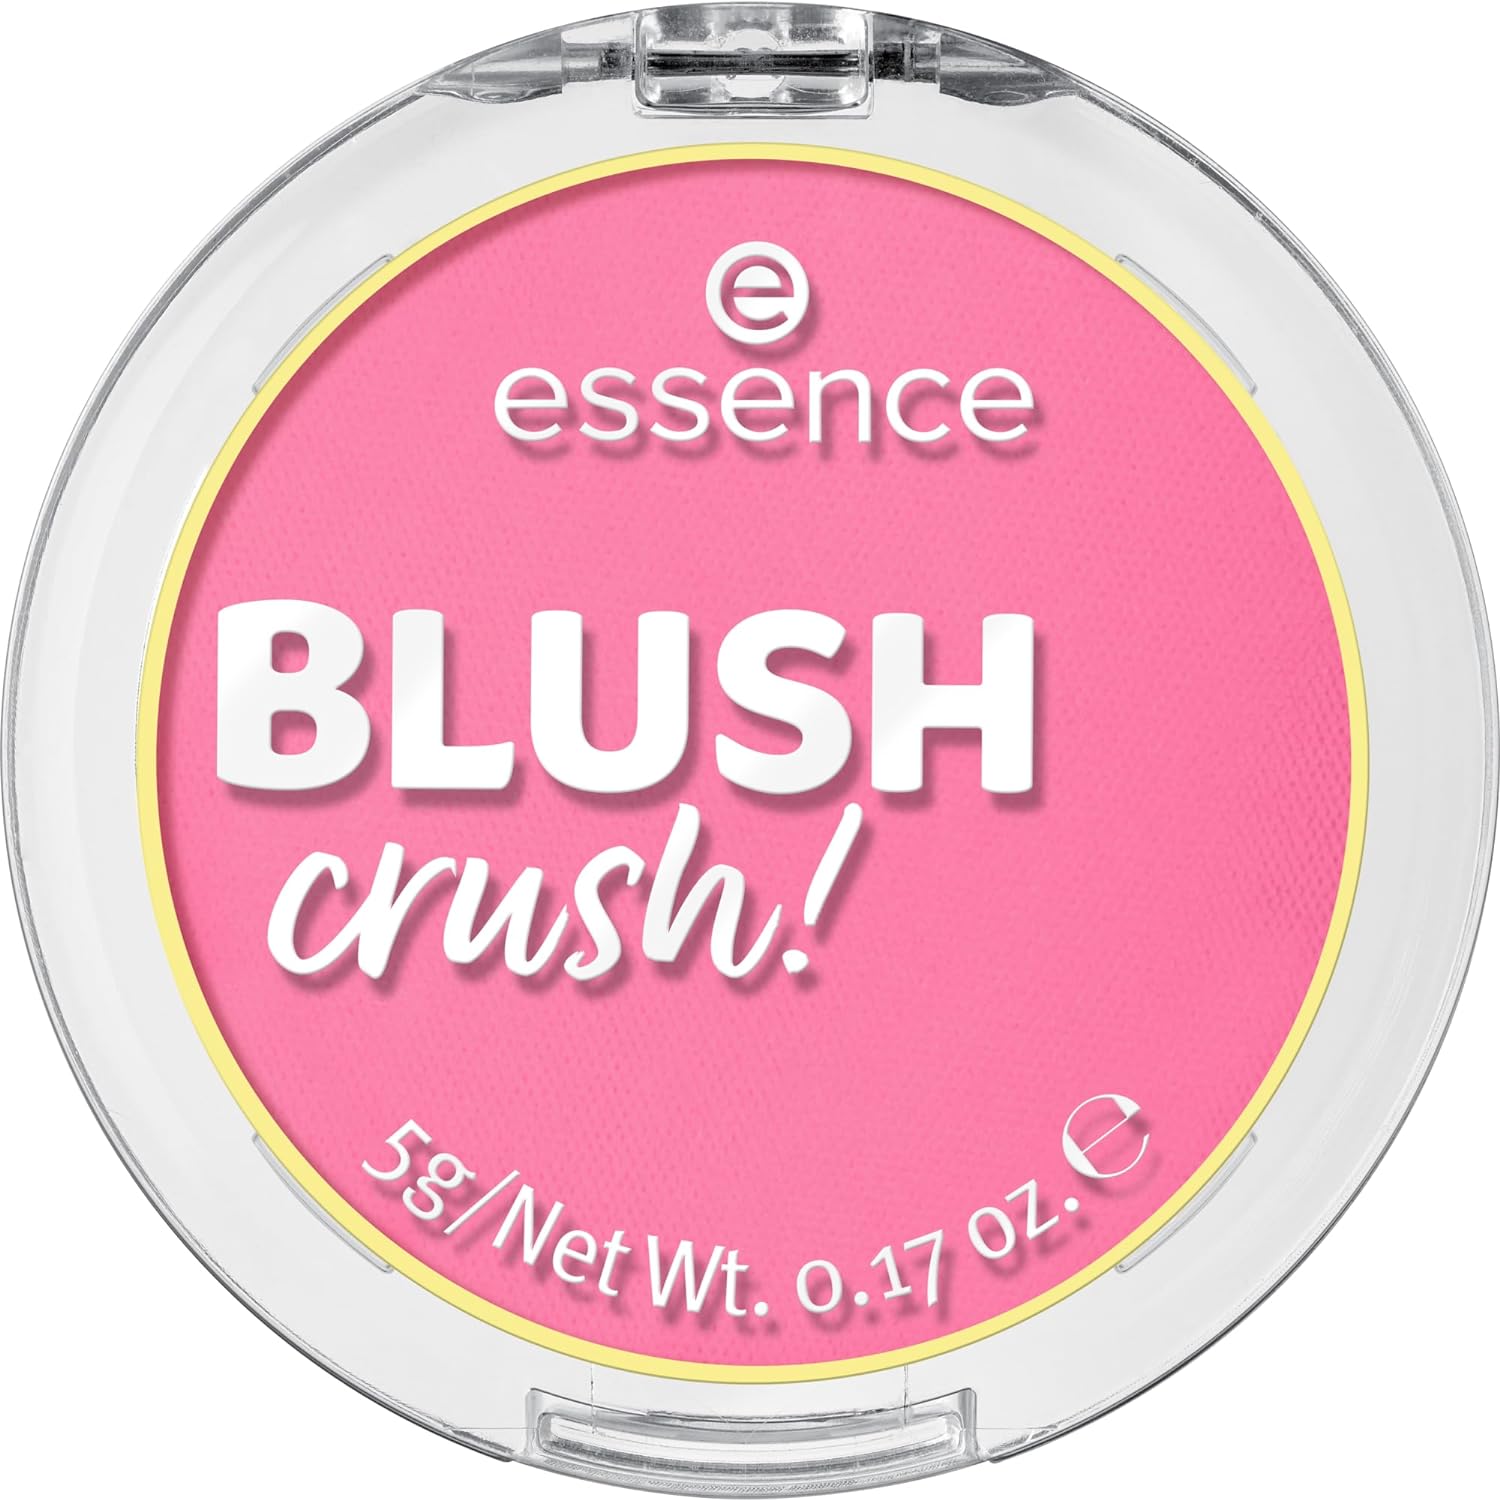 blush crush.jpg